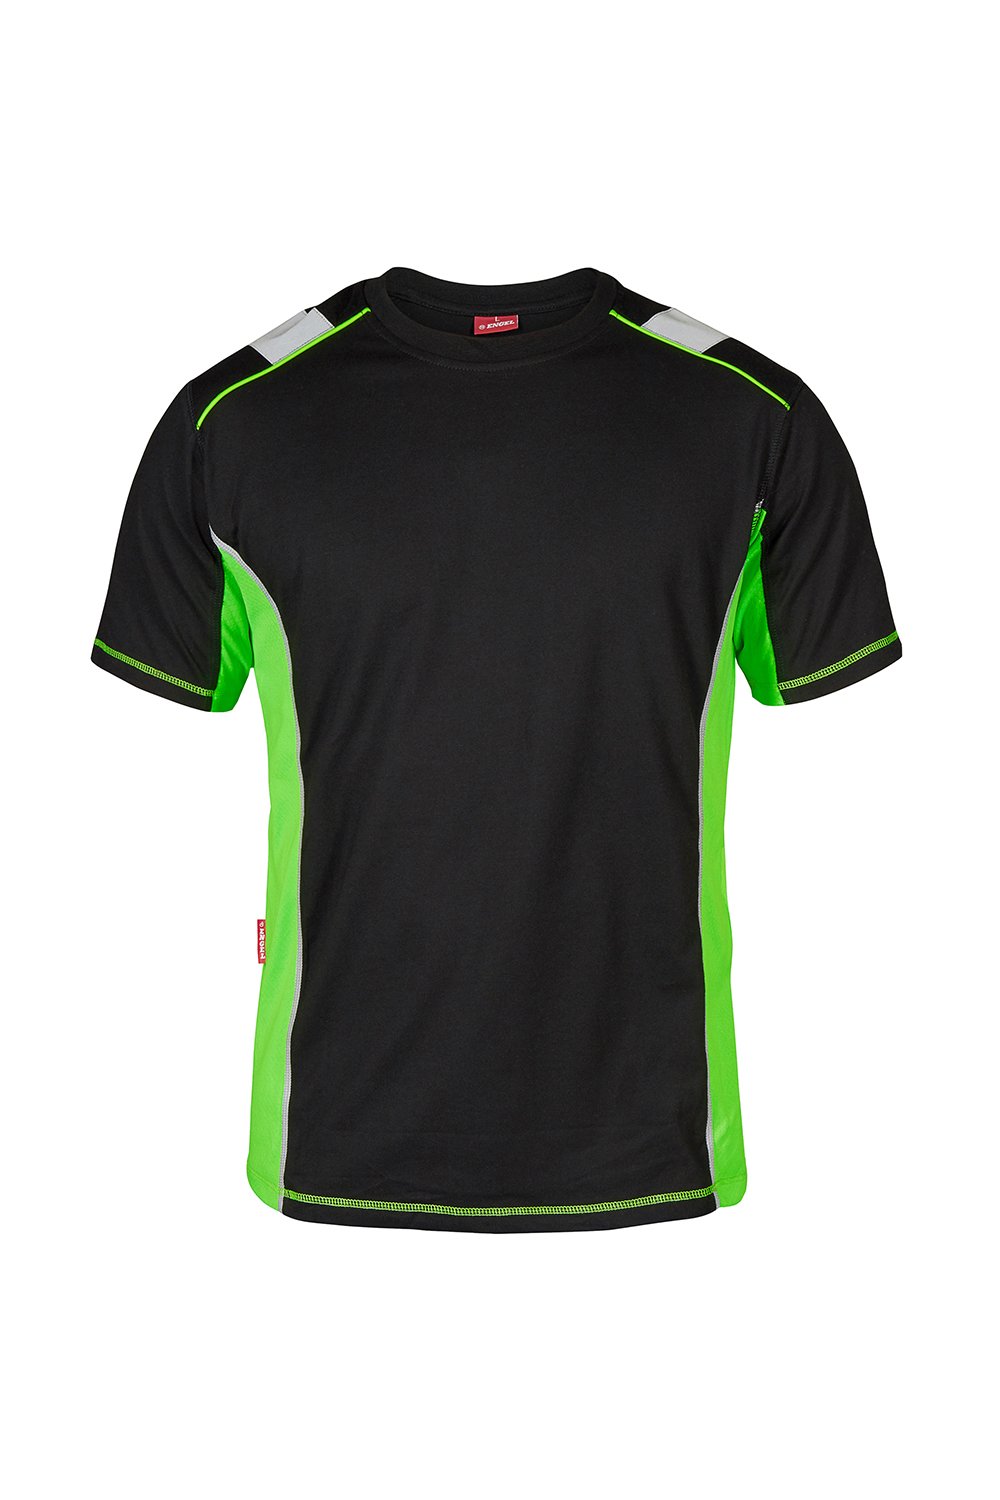 T-Shirt, schwarz/grün